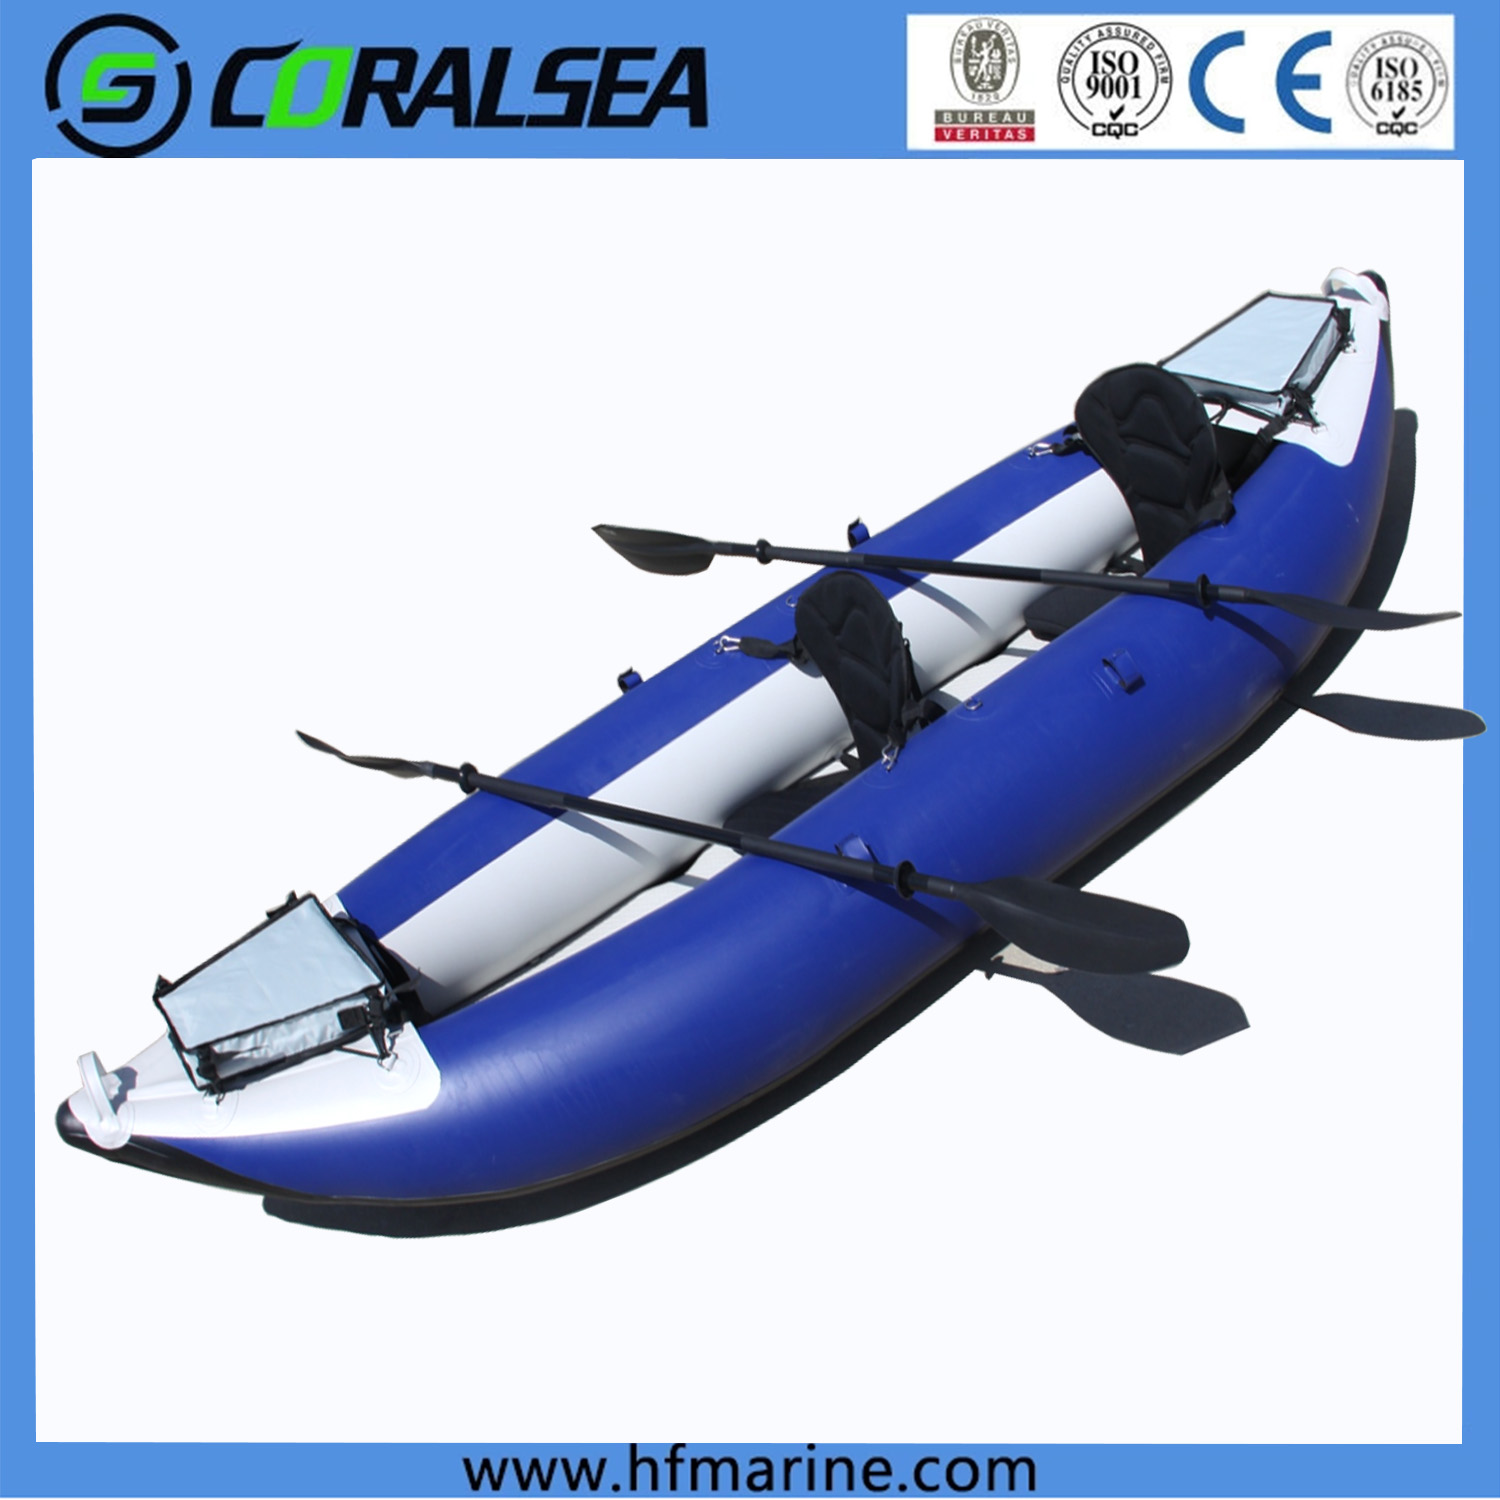 E ʻimi i ka mea nui ma waho me ka HSE Tandem Inflatable Fishing Kayak